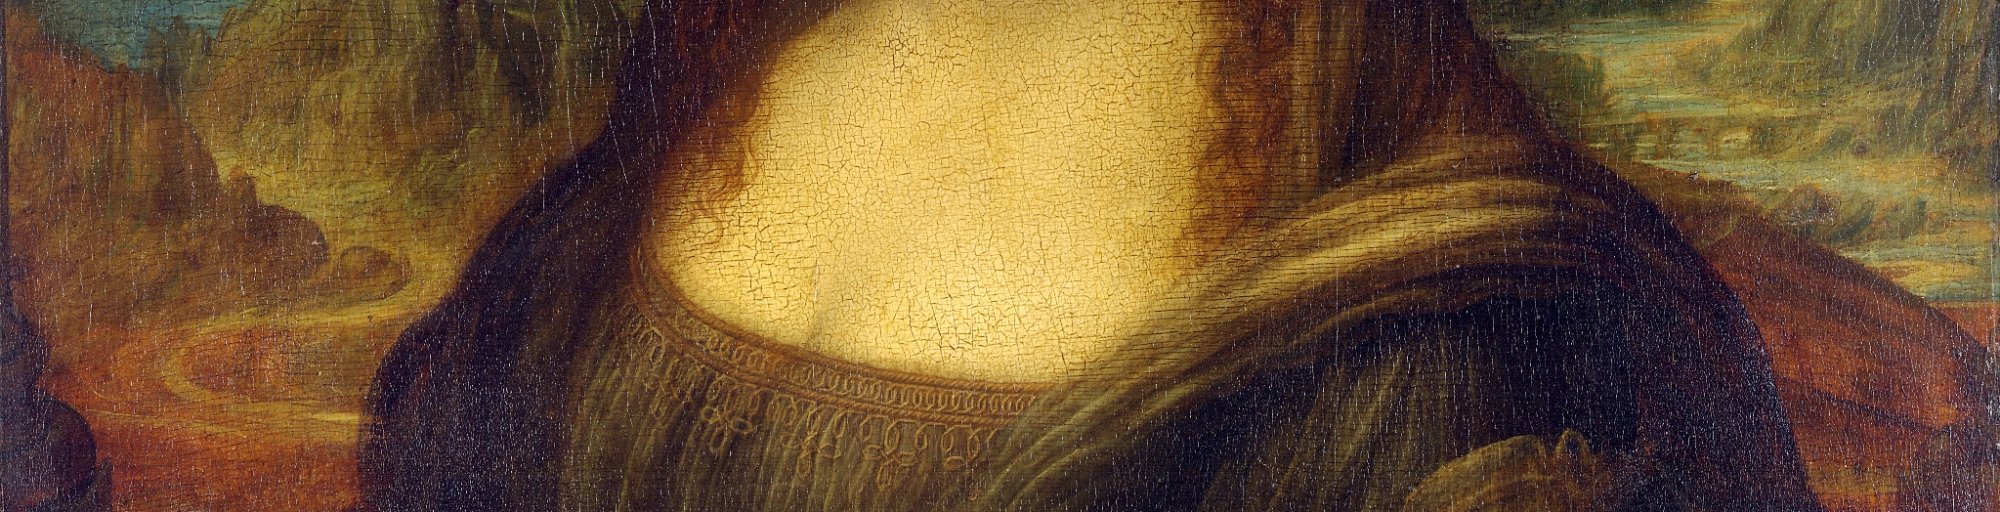 Gioconda de Leonardo da Vinci